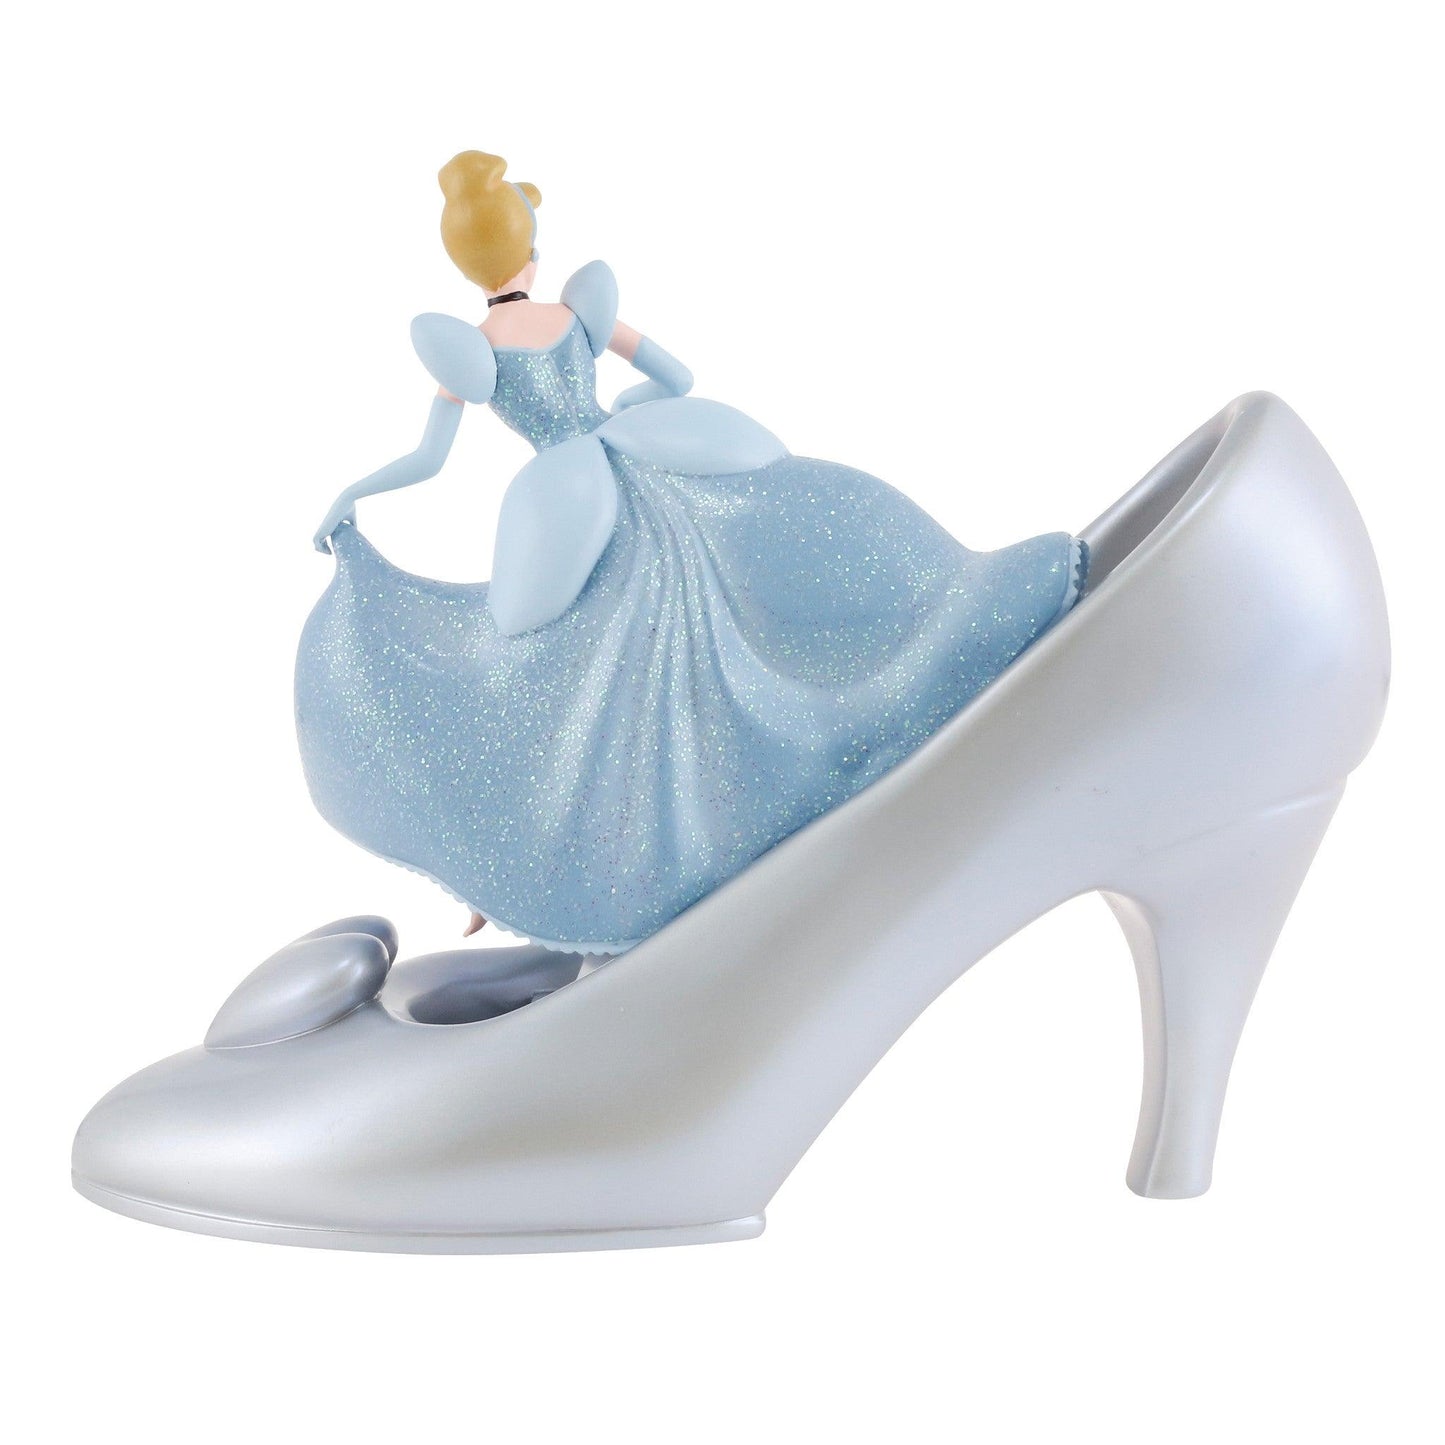 Cinderella Icon Figurine - Gallery Gifts Online 